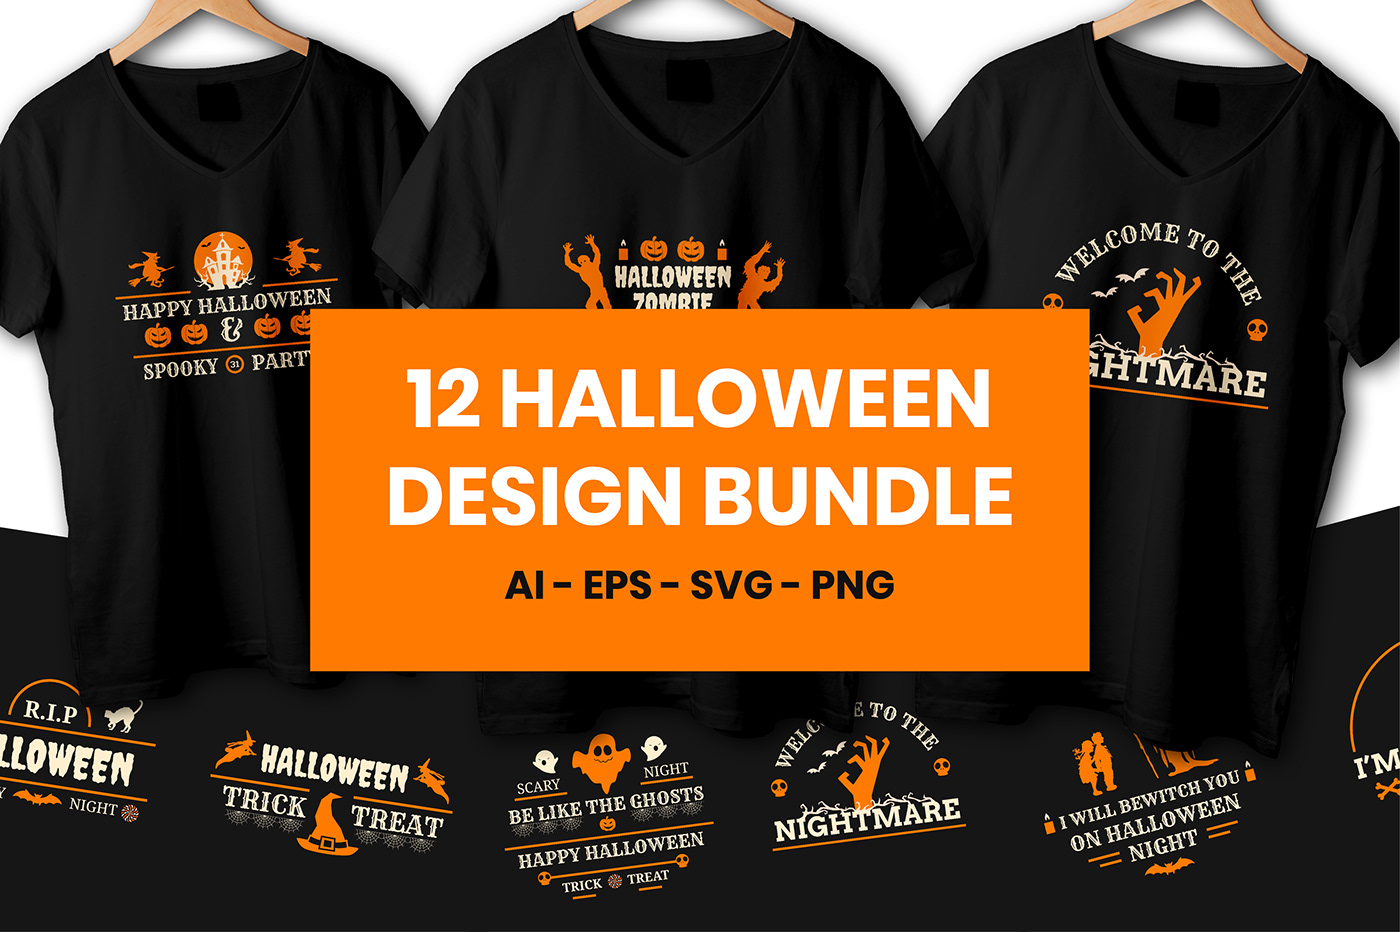 Advertising  bundle design designer Fashion  Halloween print pumkin T Shirt t-shirt